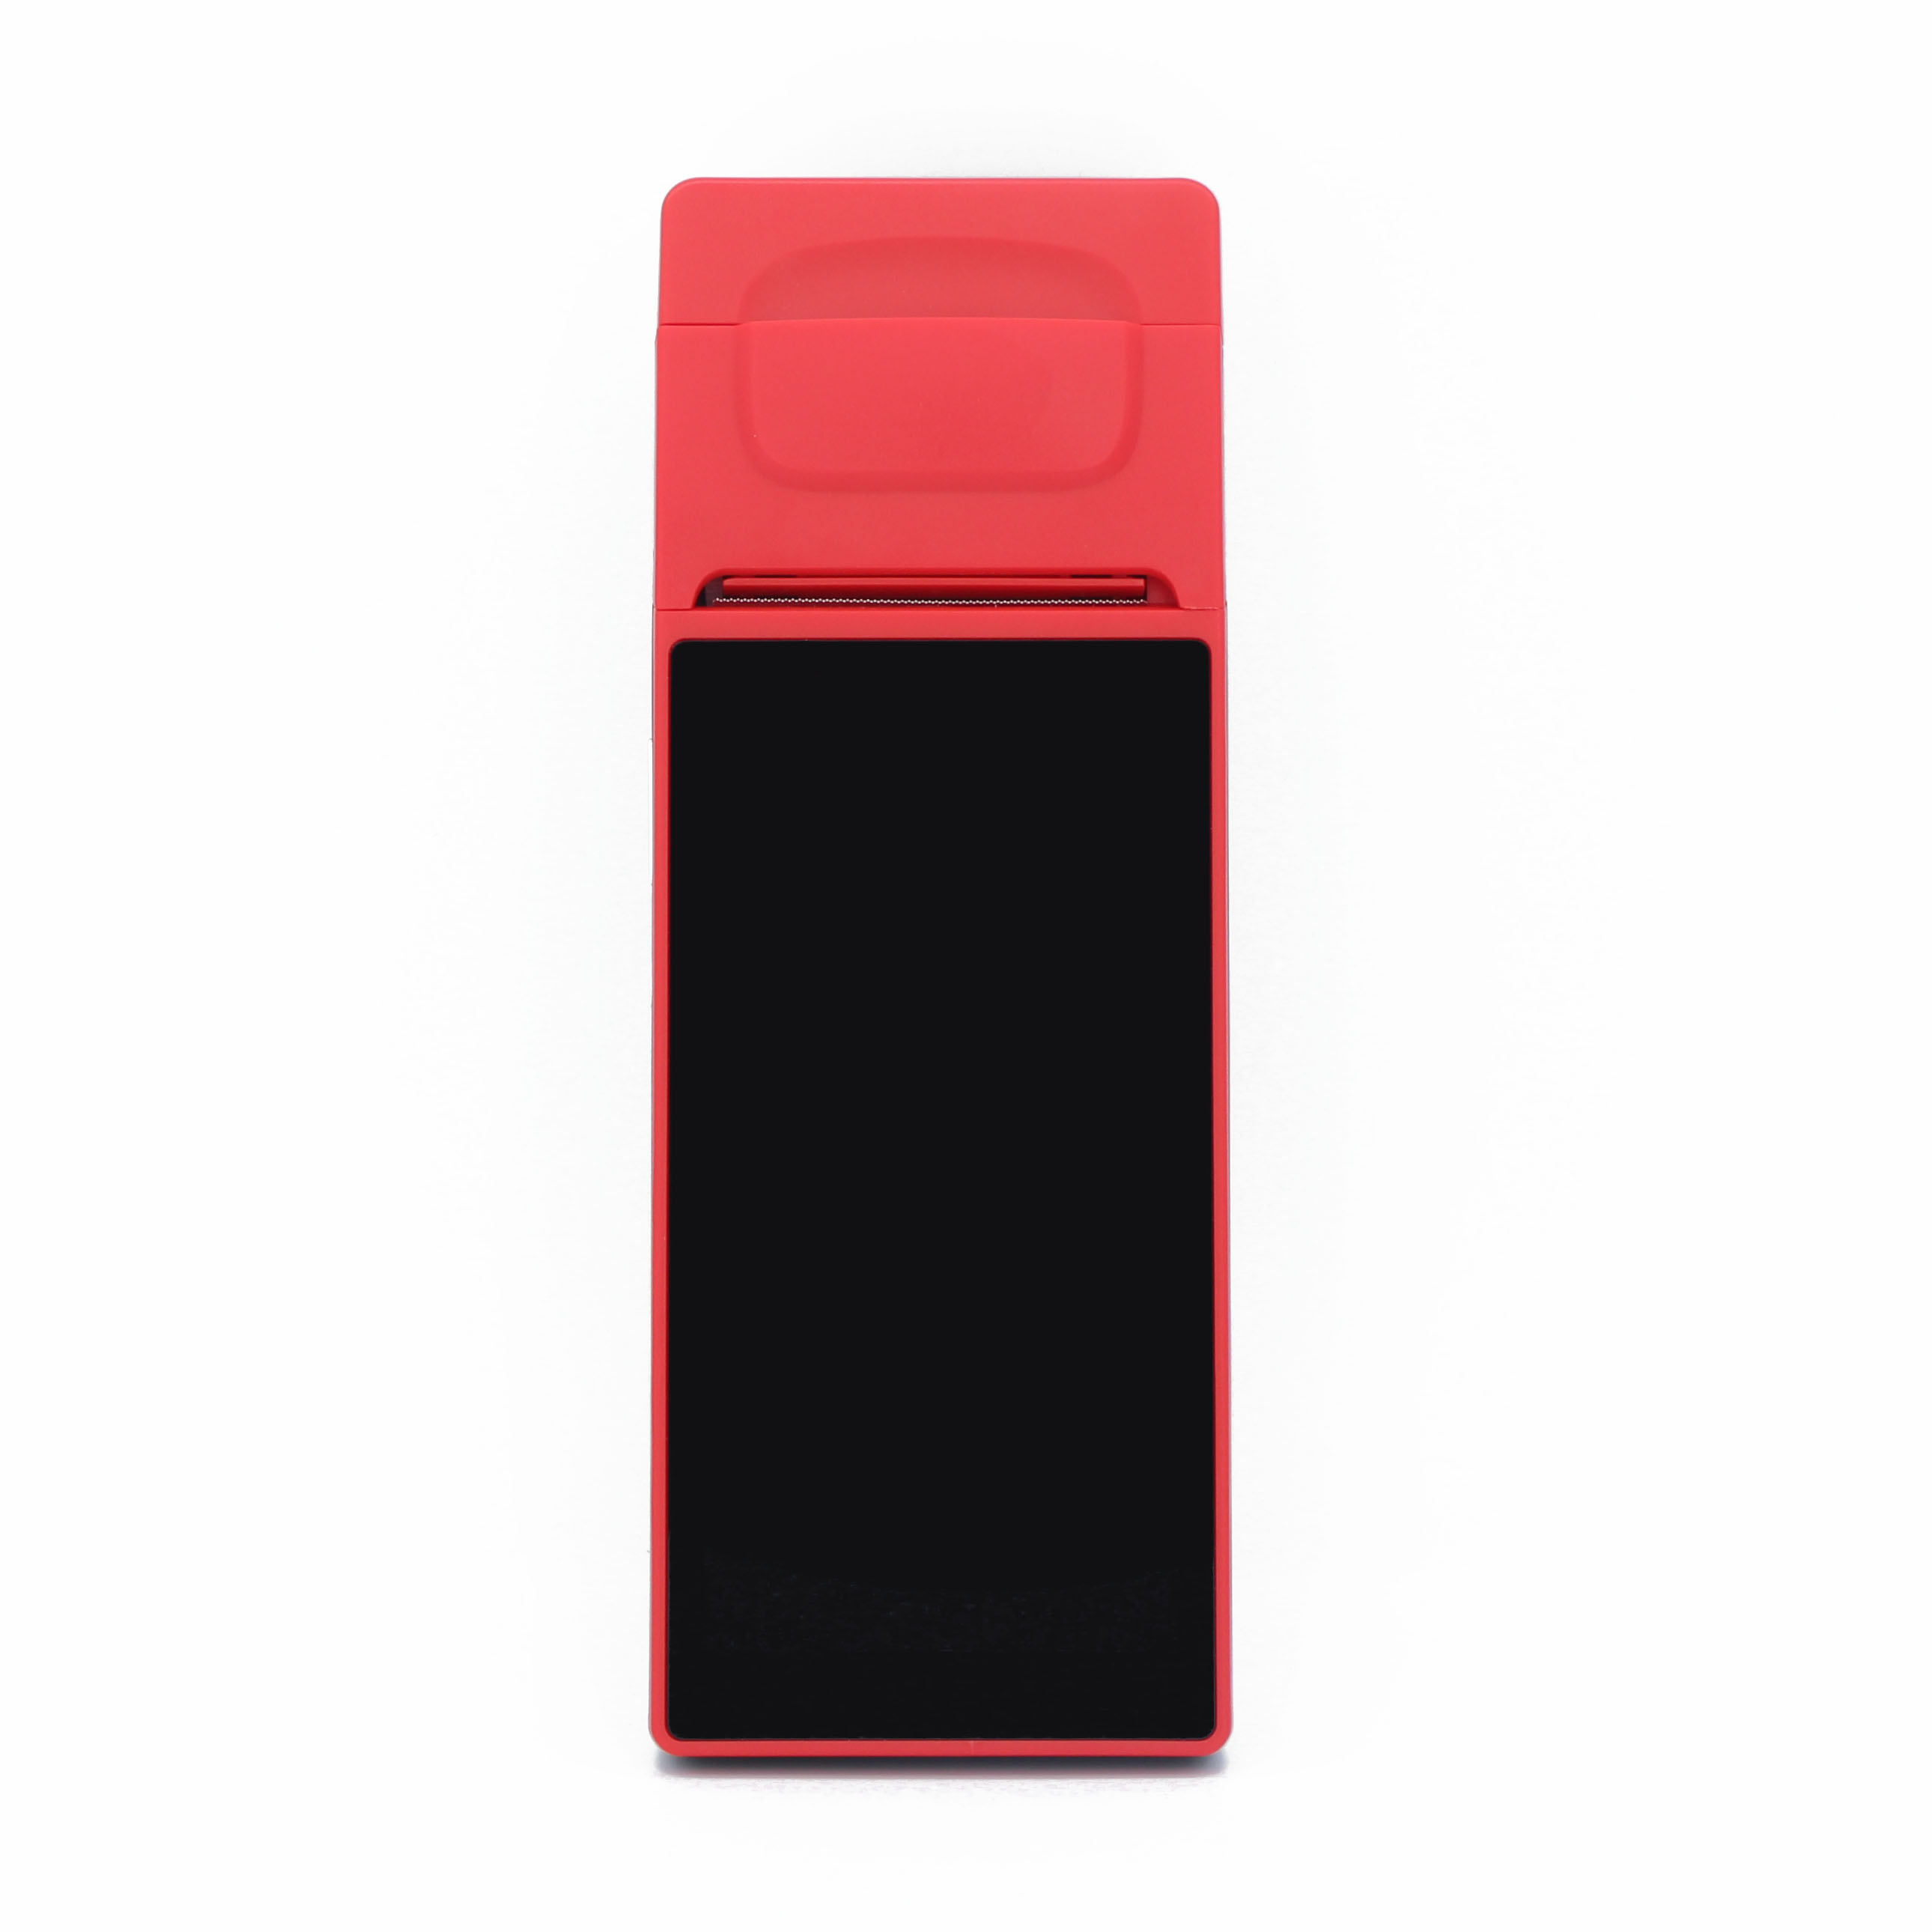 Terminal POS Android portátil com tela sensível ao toque de 6 polegadas com impressora para estacionamento de carros
